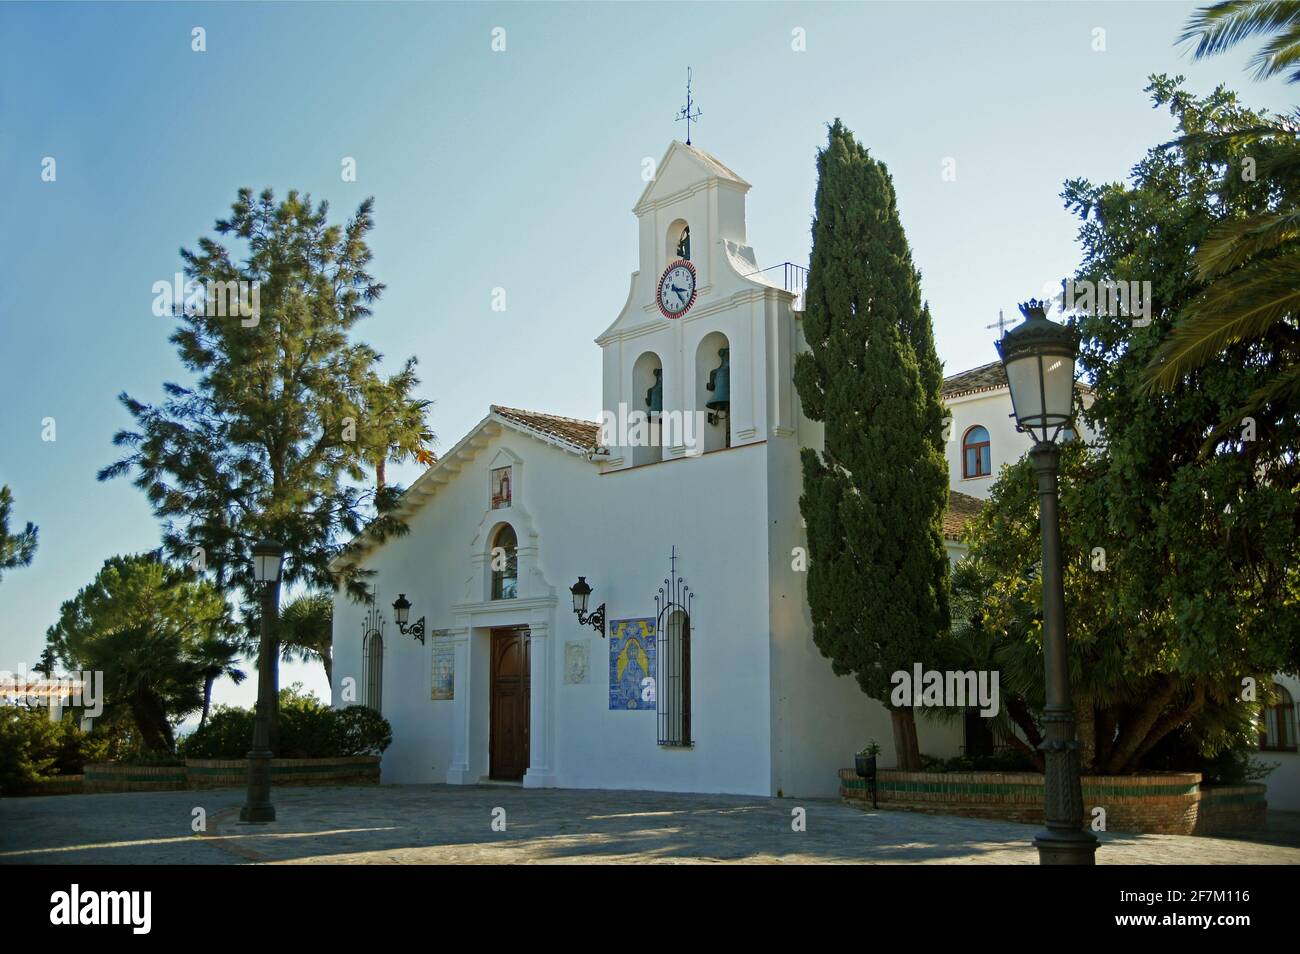 The church of Santo Domingo de Guzmán Stock Photo